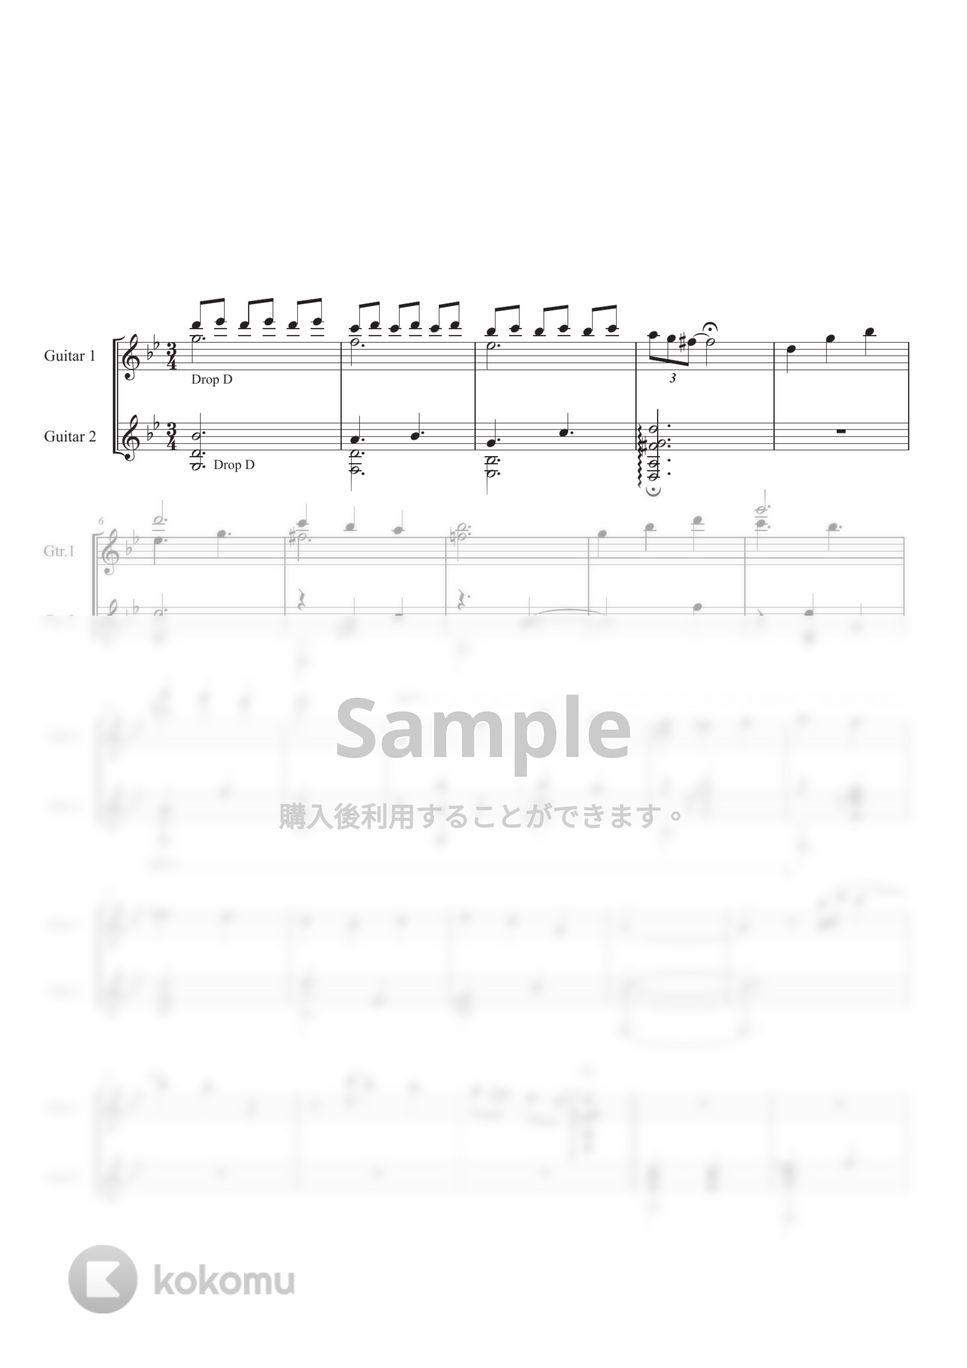 久石 譲 - 人生のメリーゴーランド (ギターデュオ) by Ponze Records